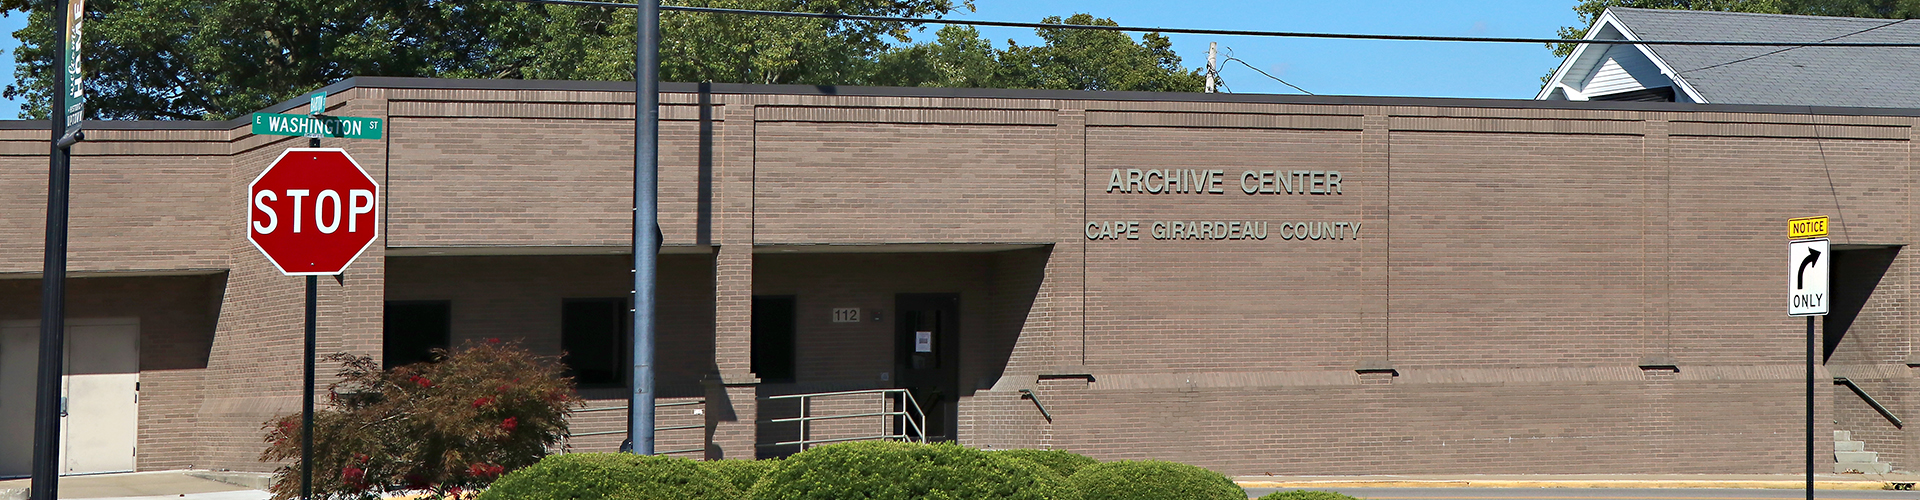 Cape Girardeau County Archive Center